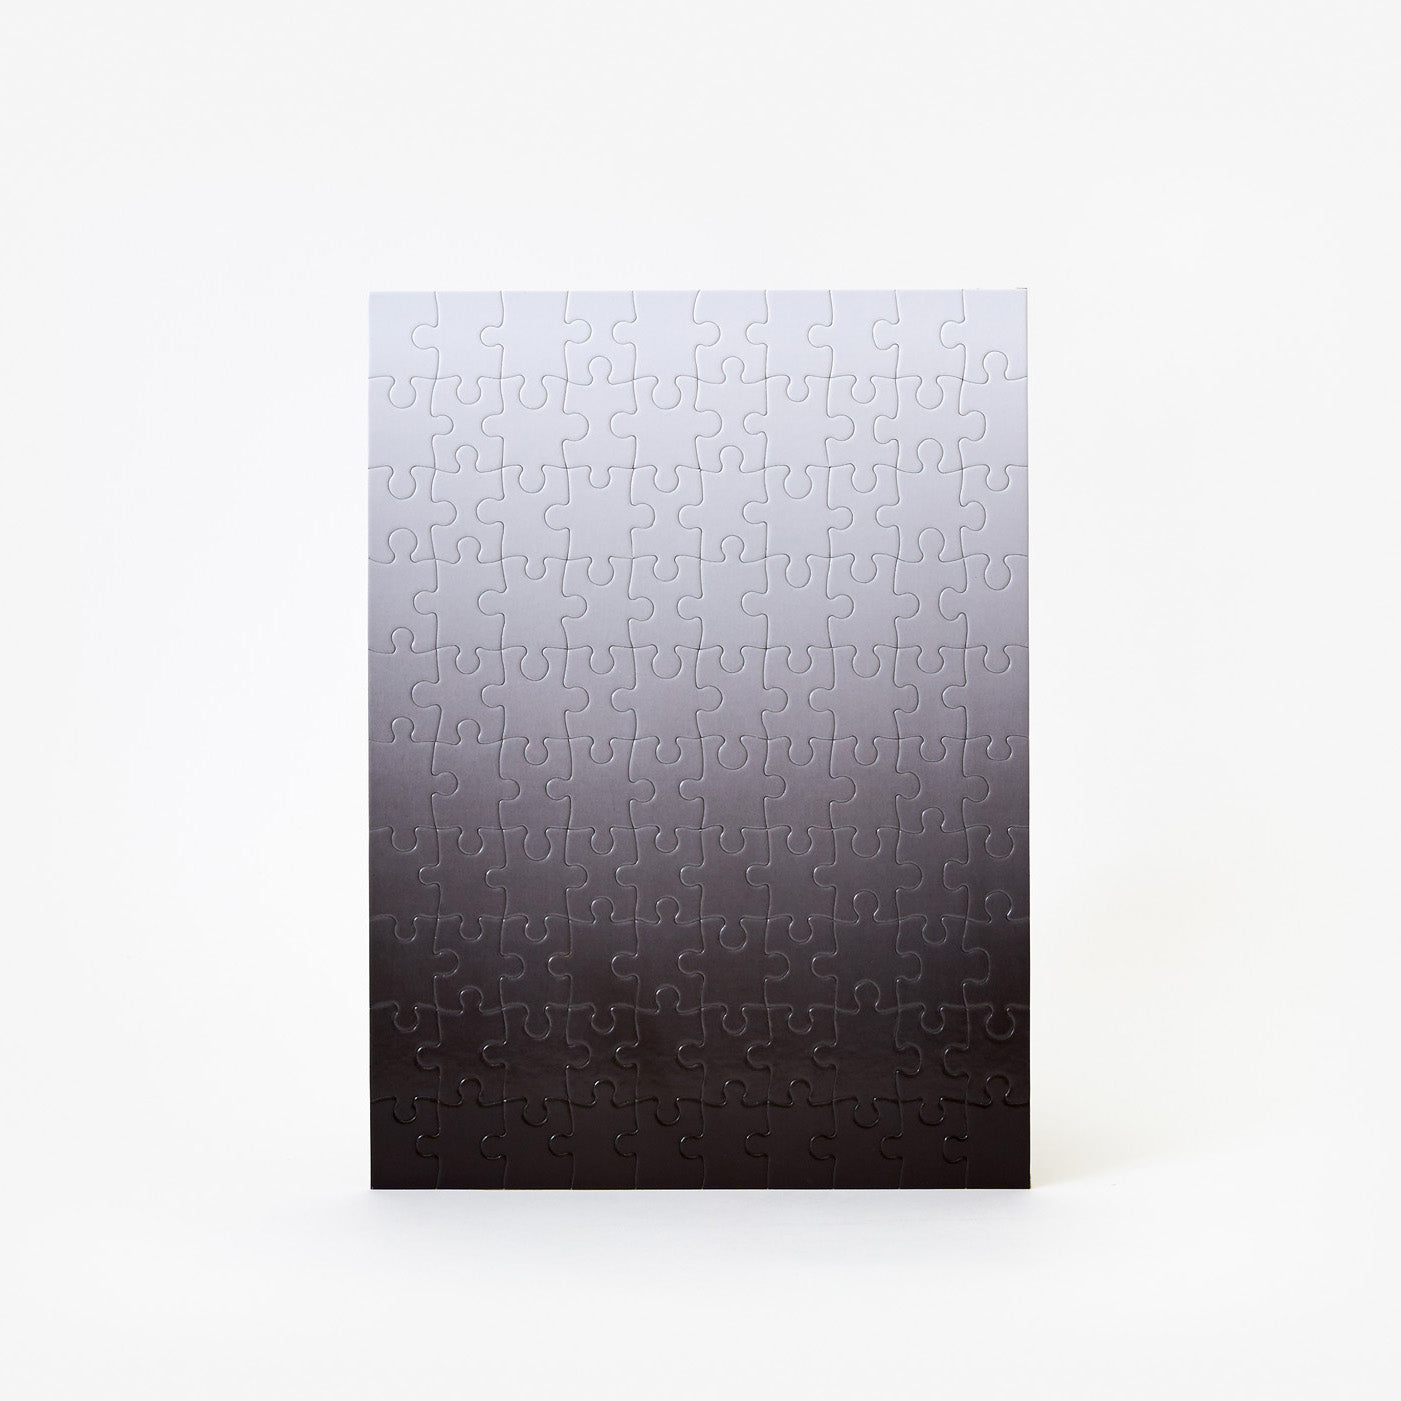 Rompecabezas de Degradado (Gradient Rompecabezas) 100 piezas - Negro/Blanco